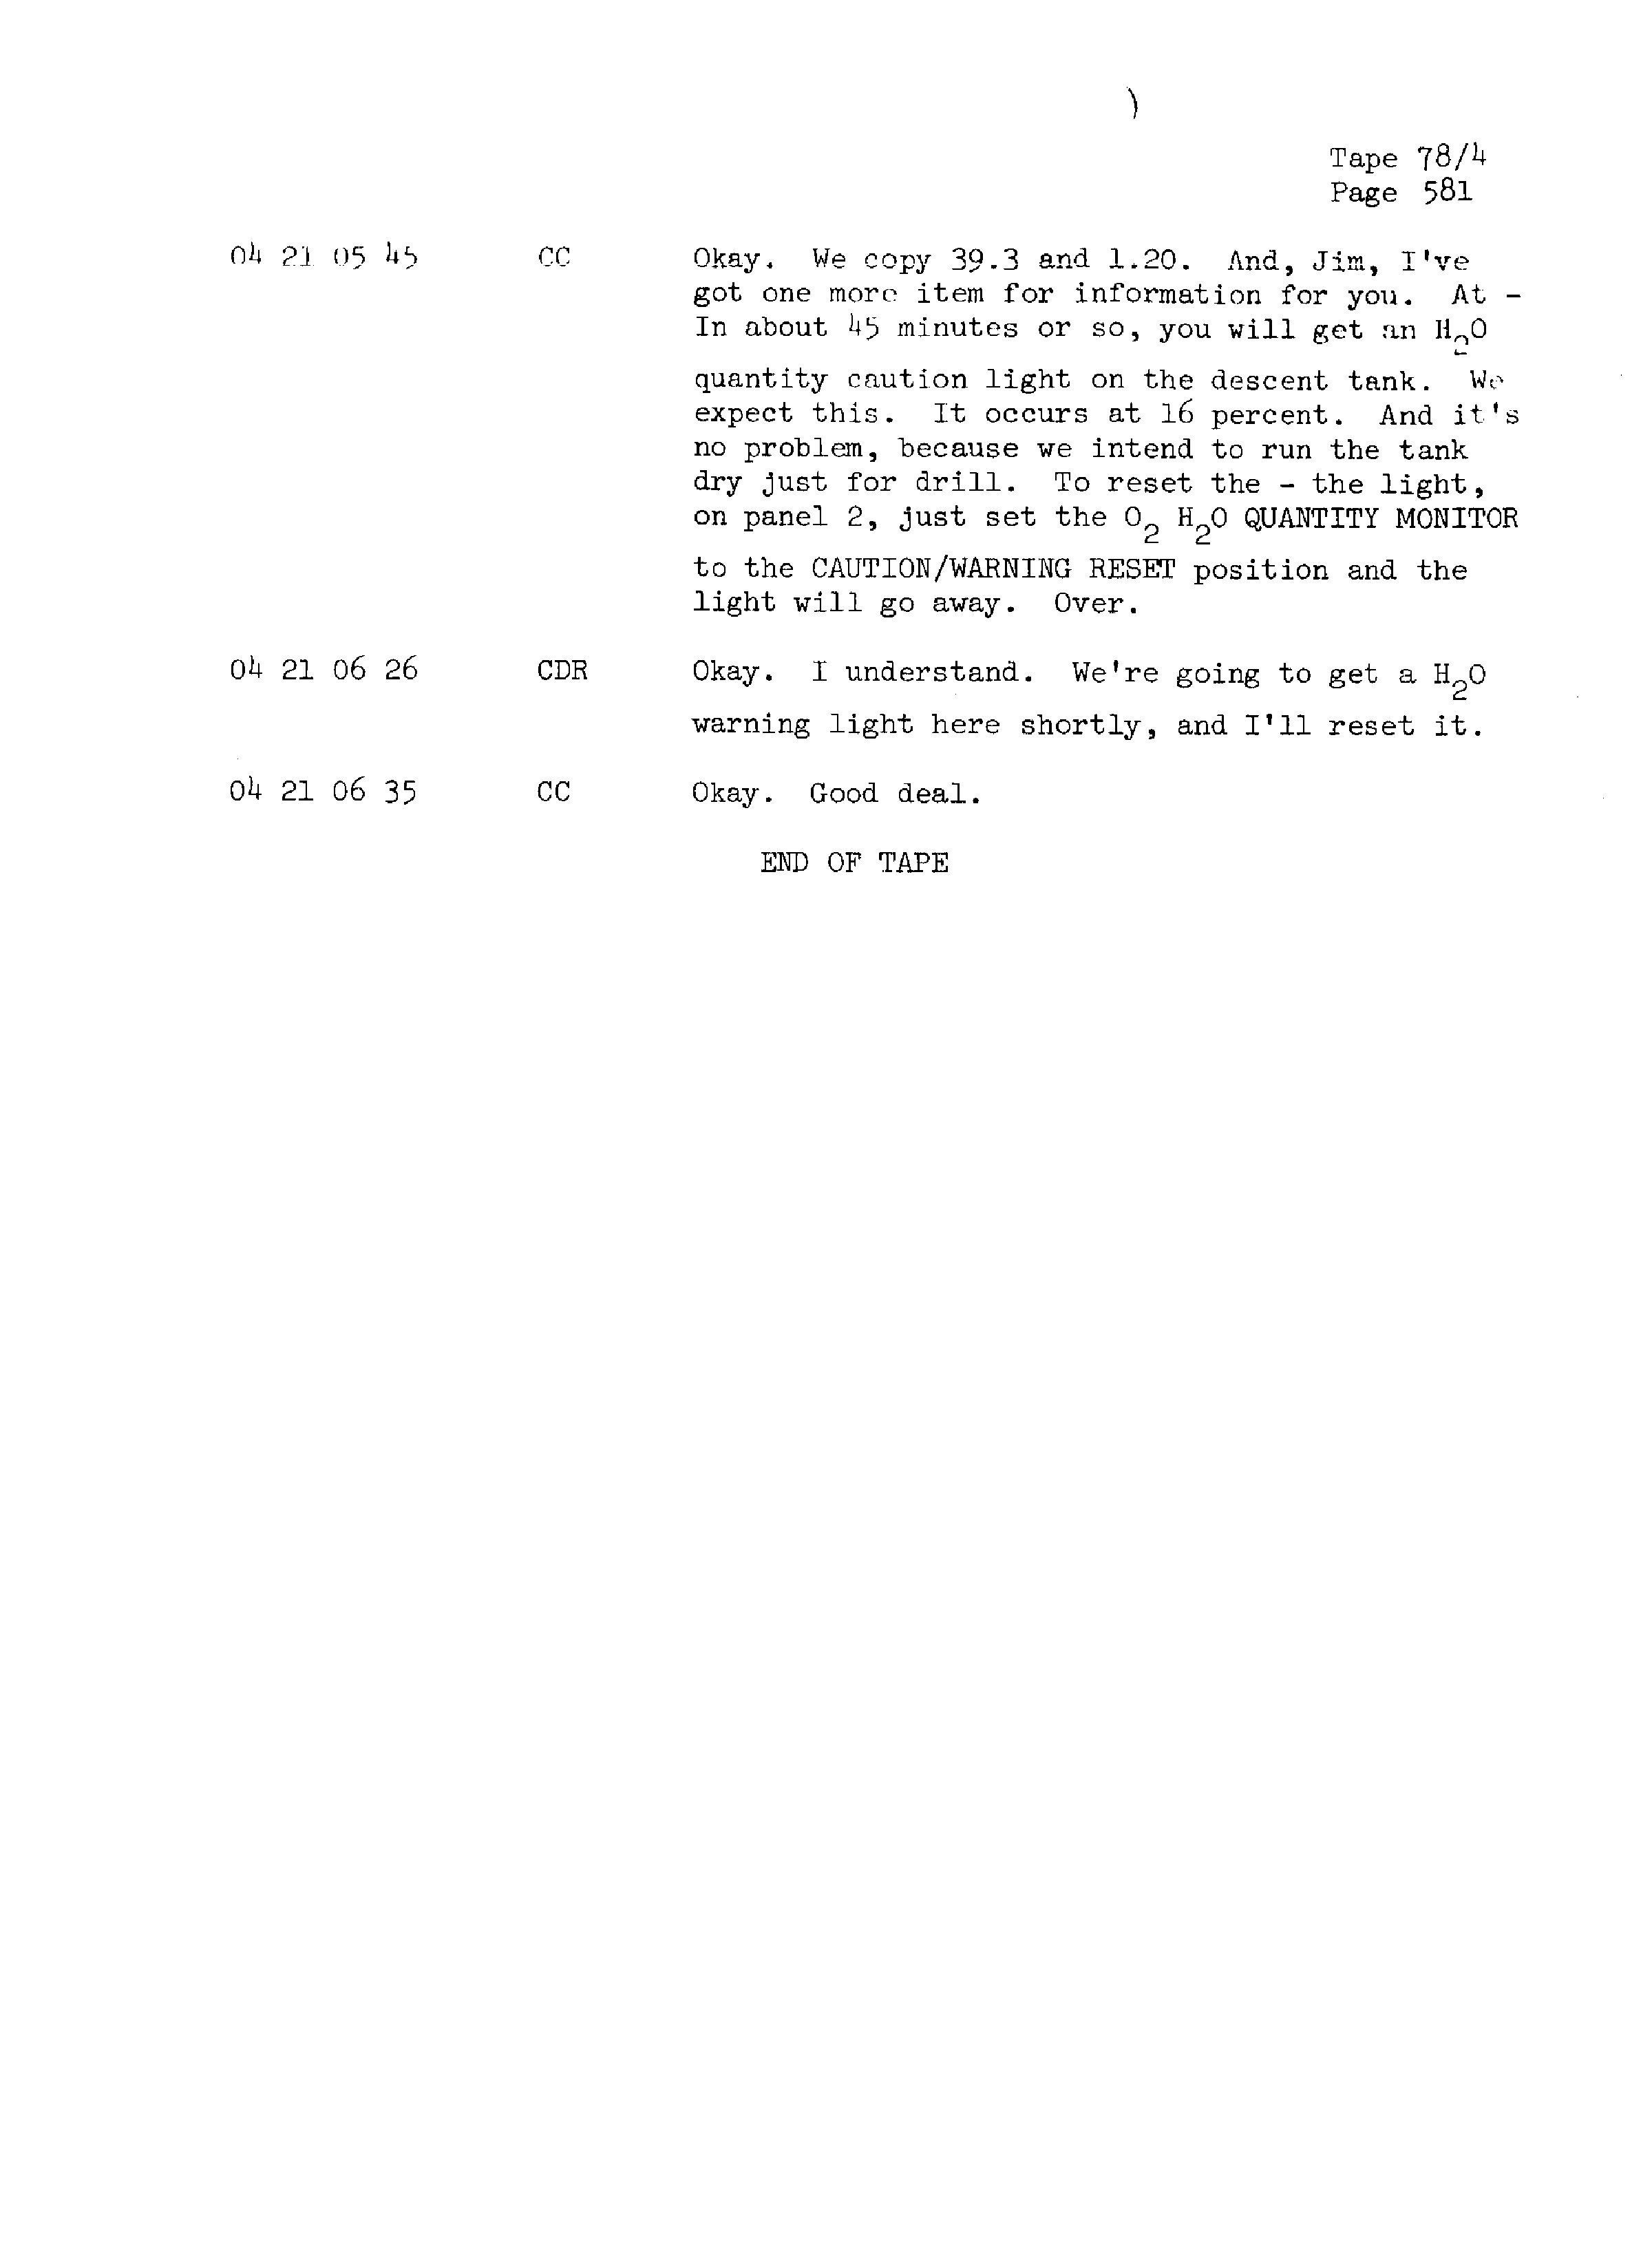 Page 588 of Apollo 13’s original transcript